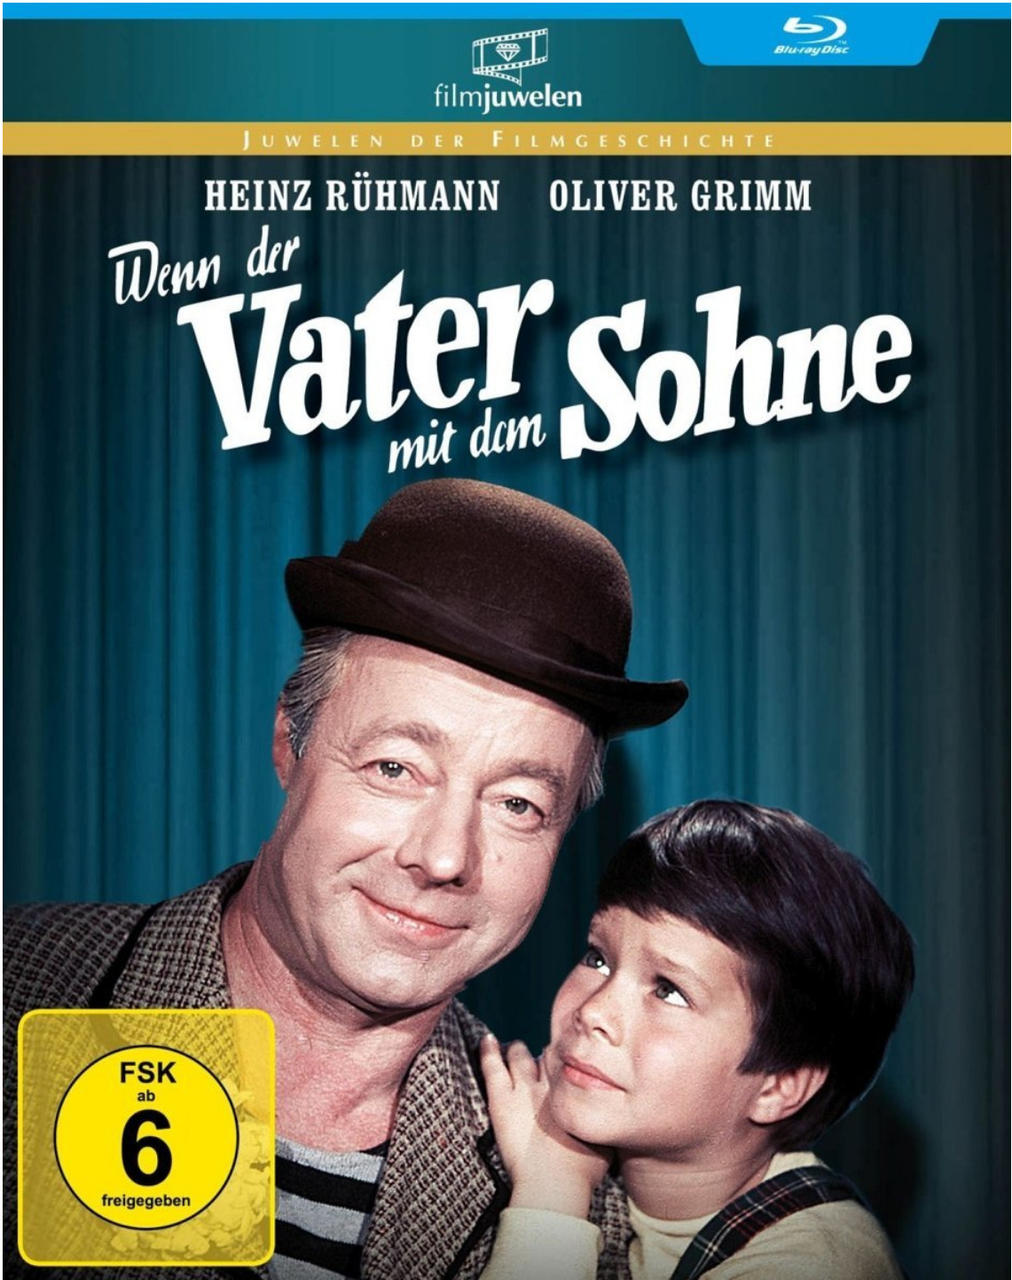 Rühmann Heinz Sohne Edition Blu-ray Wenn mit Vater der dem -